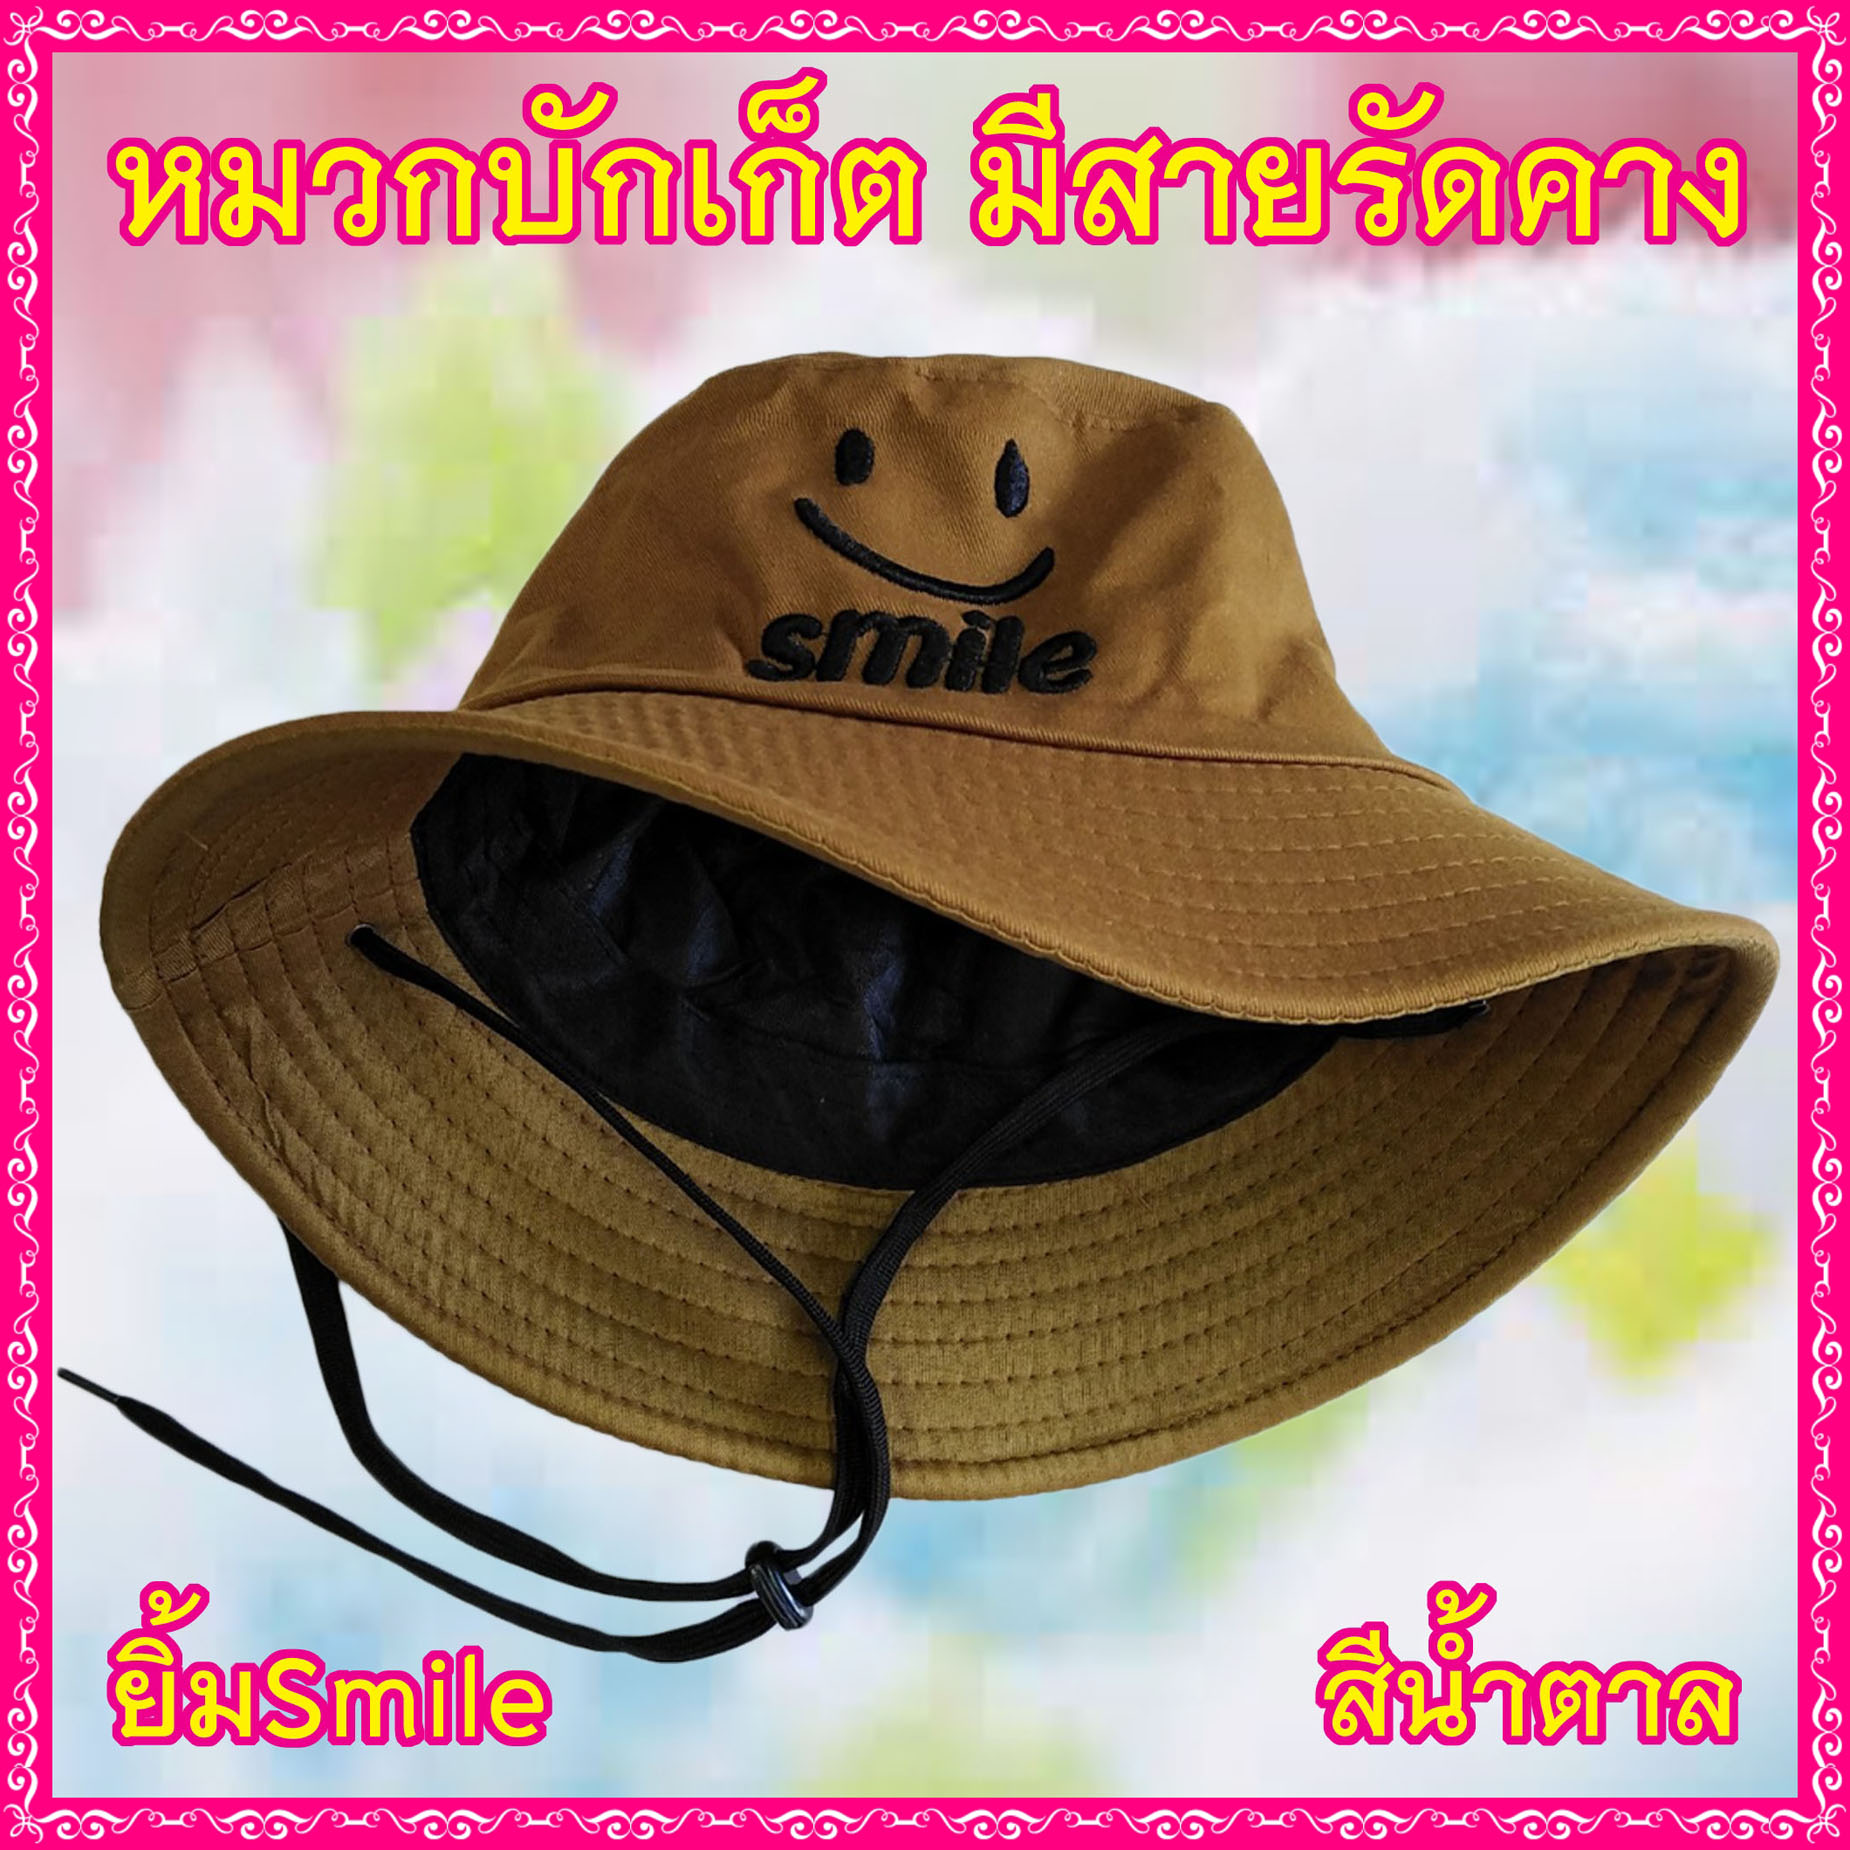 AM0025 หมวกบักเก็ต มีสายรัดคาง ลาย "ยิ้ม Smile" หมวกแฟชั่น หมวกปีกรอบ มีหลายลาย หลายสี ราคาถูก พร้อมส่ง!!!